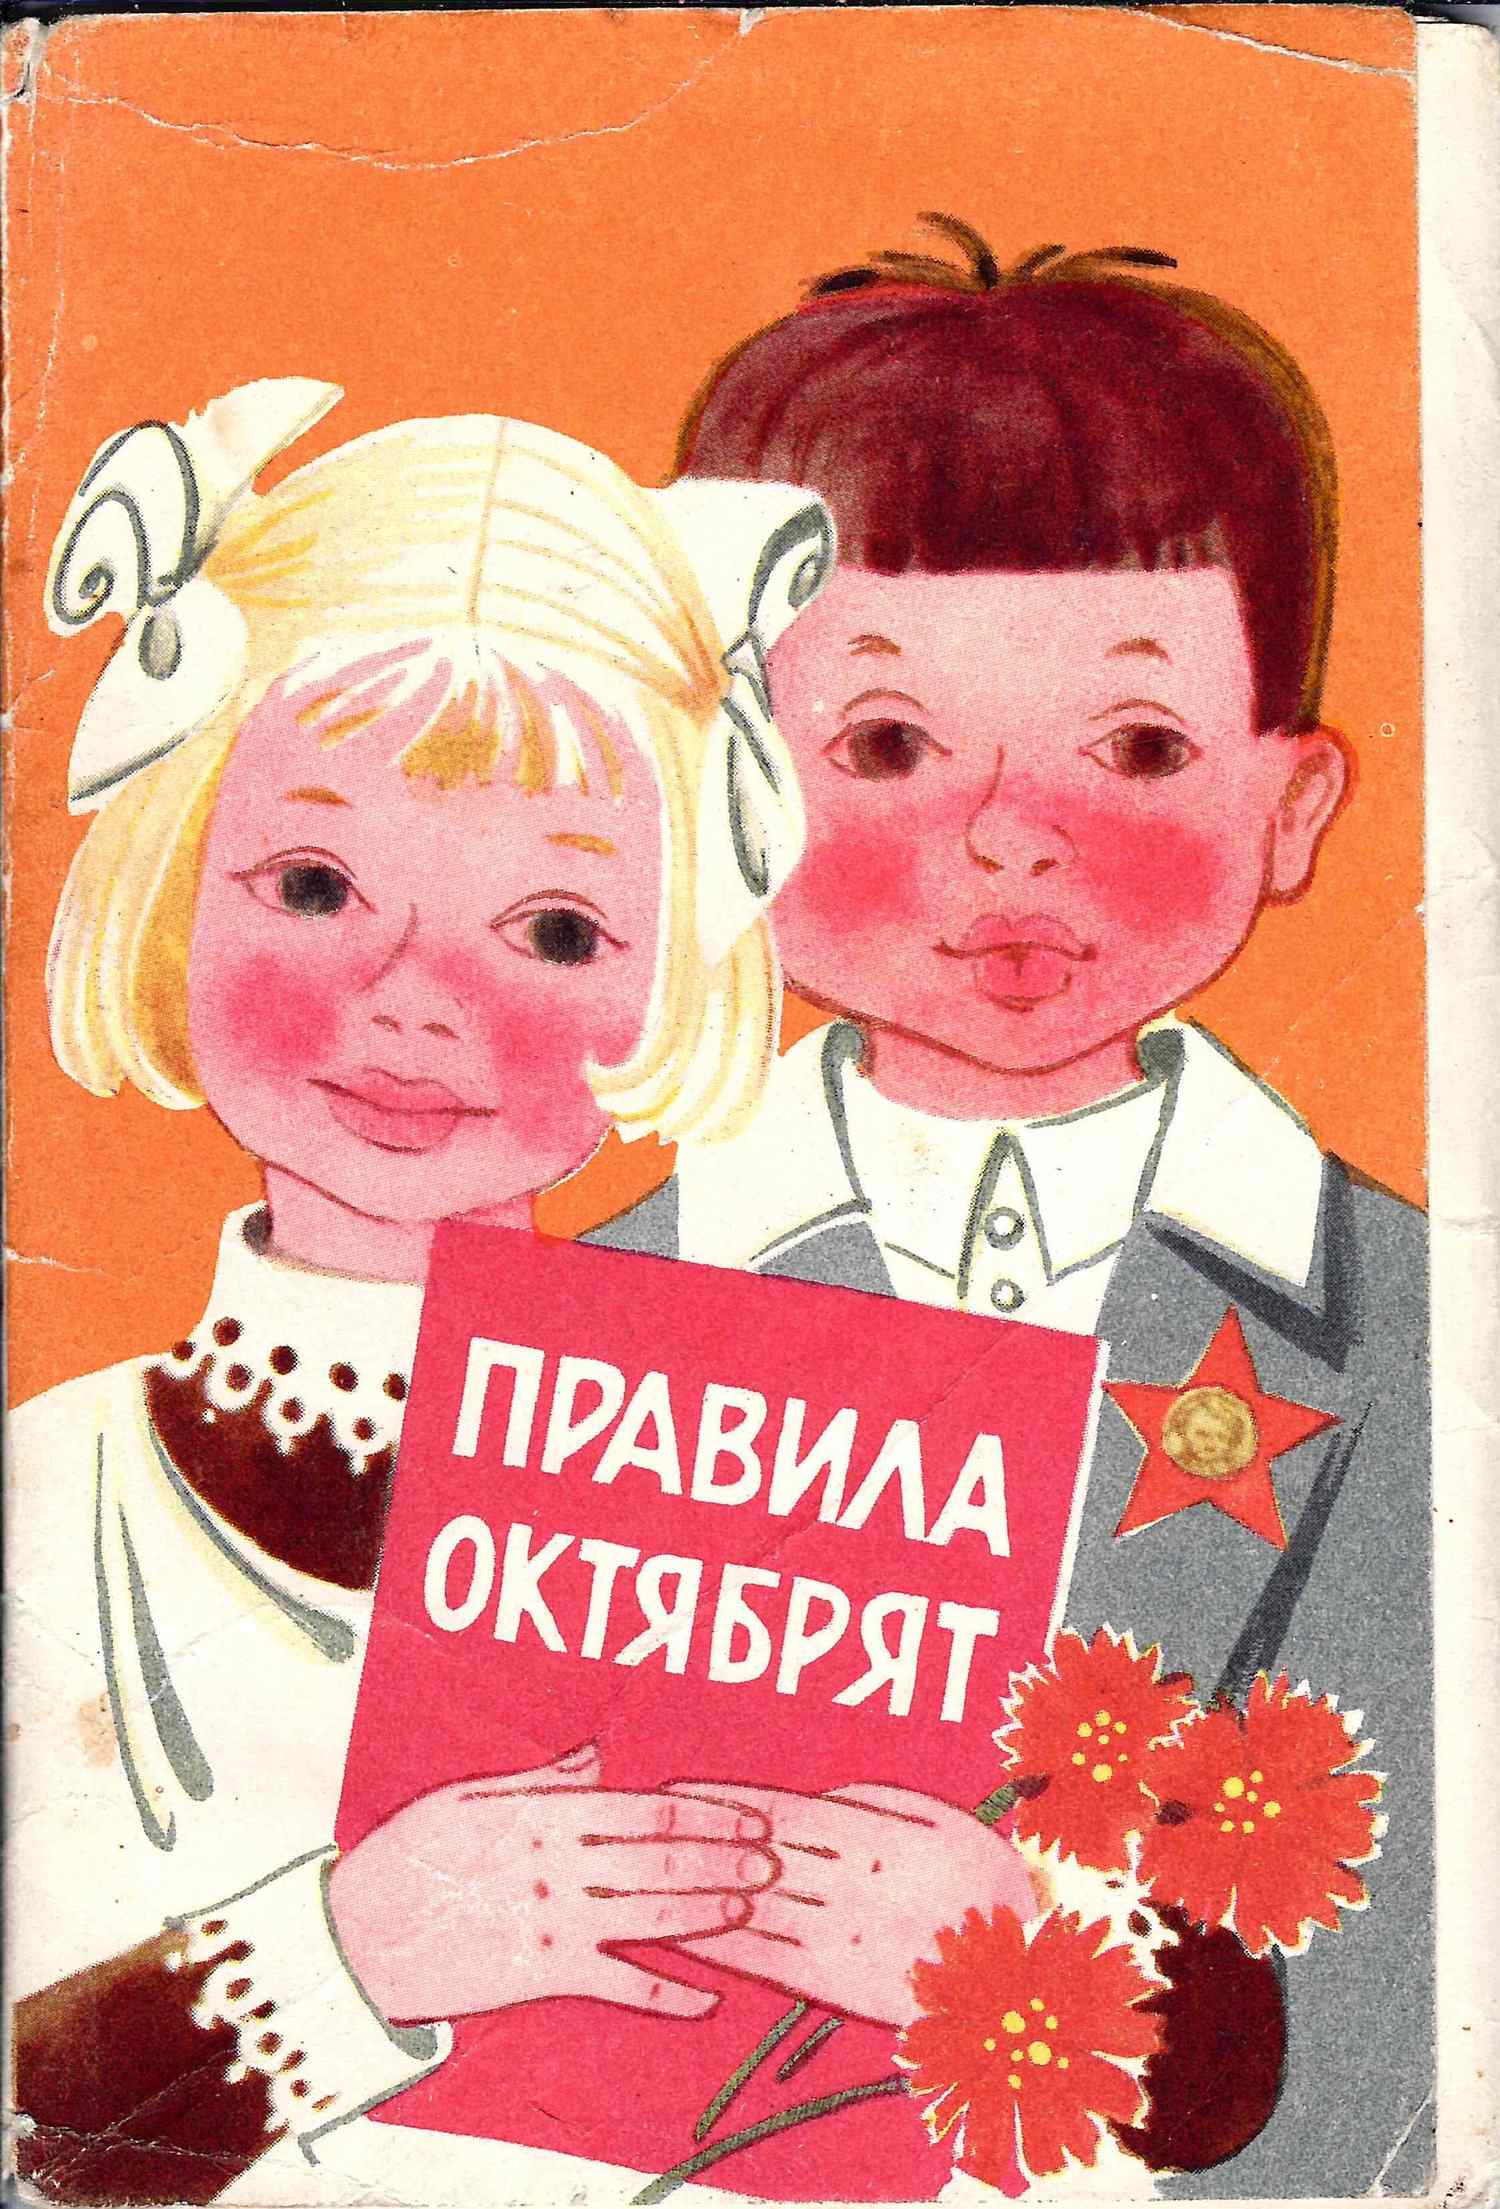 Комплект (10 открыток) «Правила октябрят» (М., 1970).